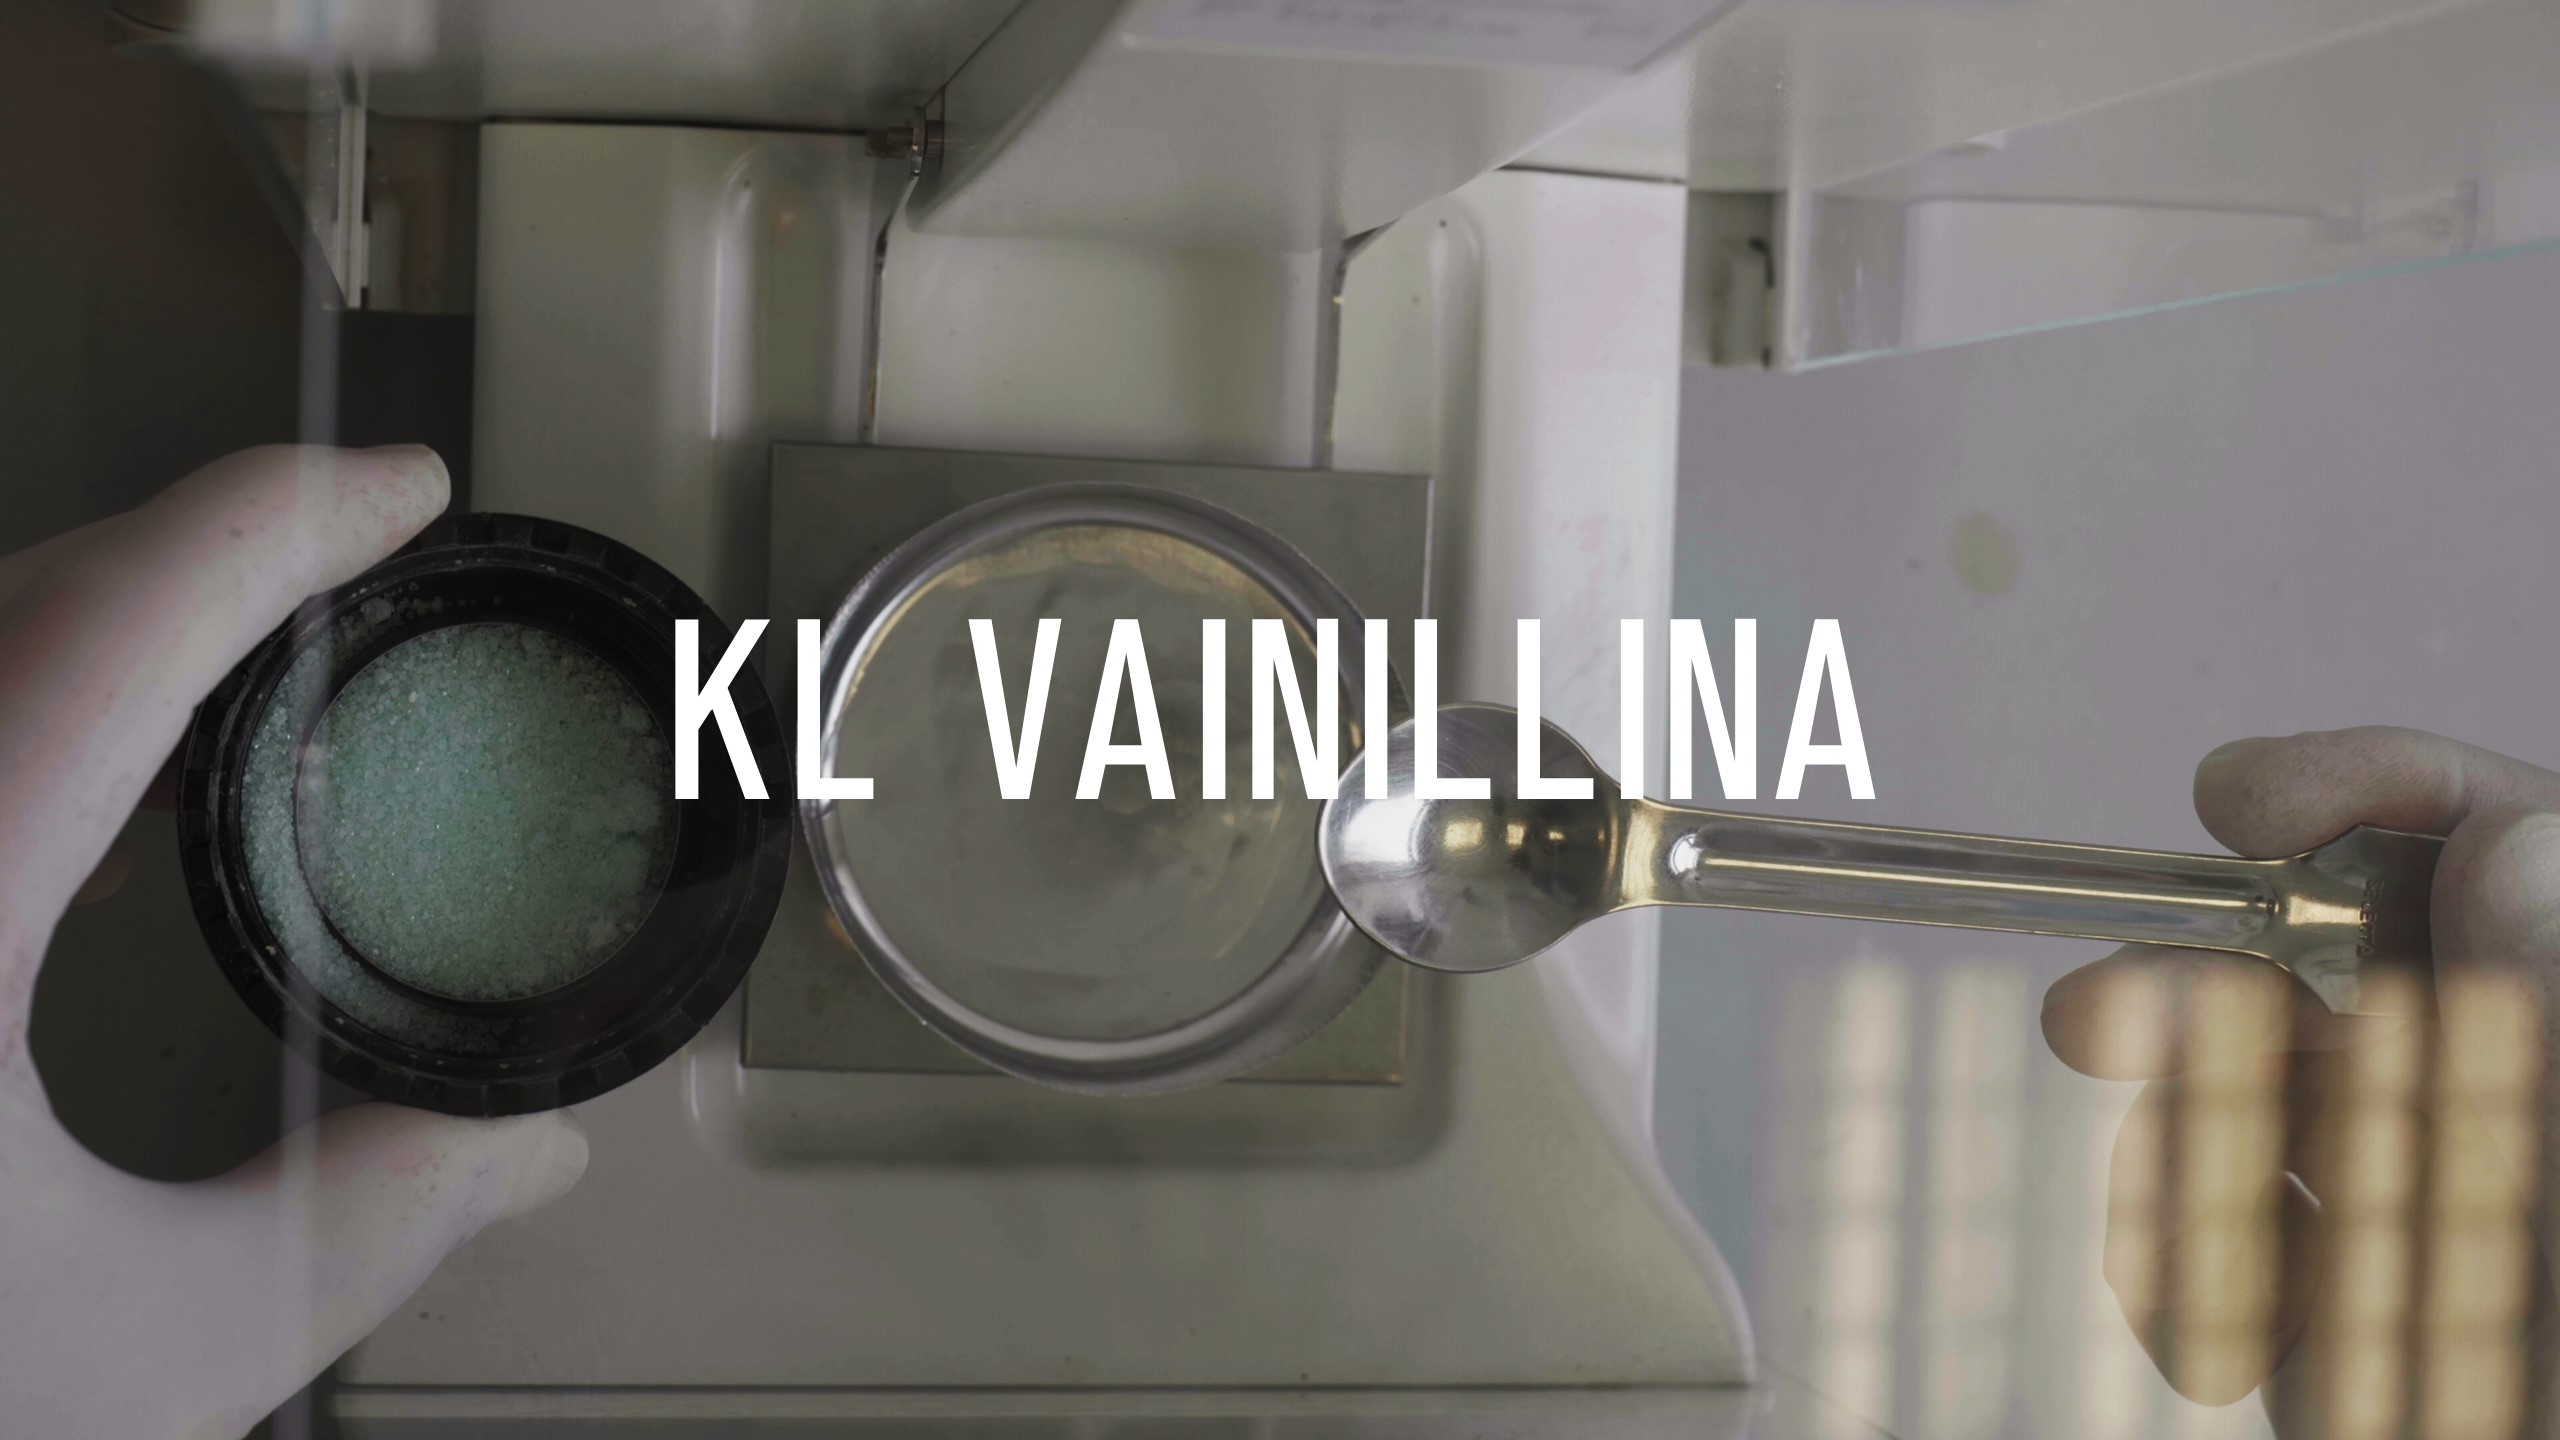 KL Vainillina Proyecto colaborativo